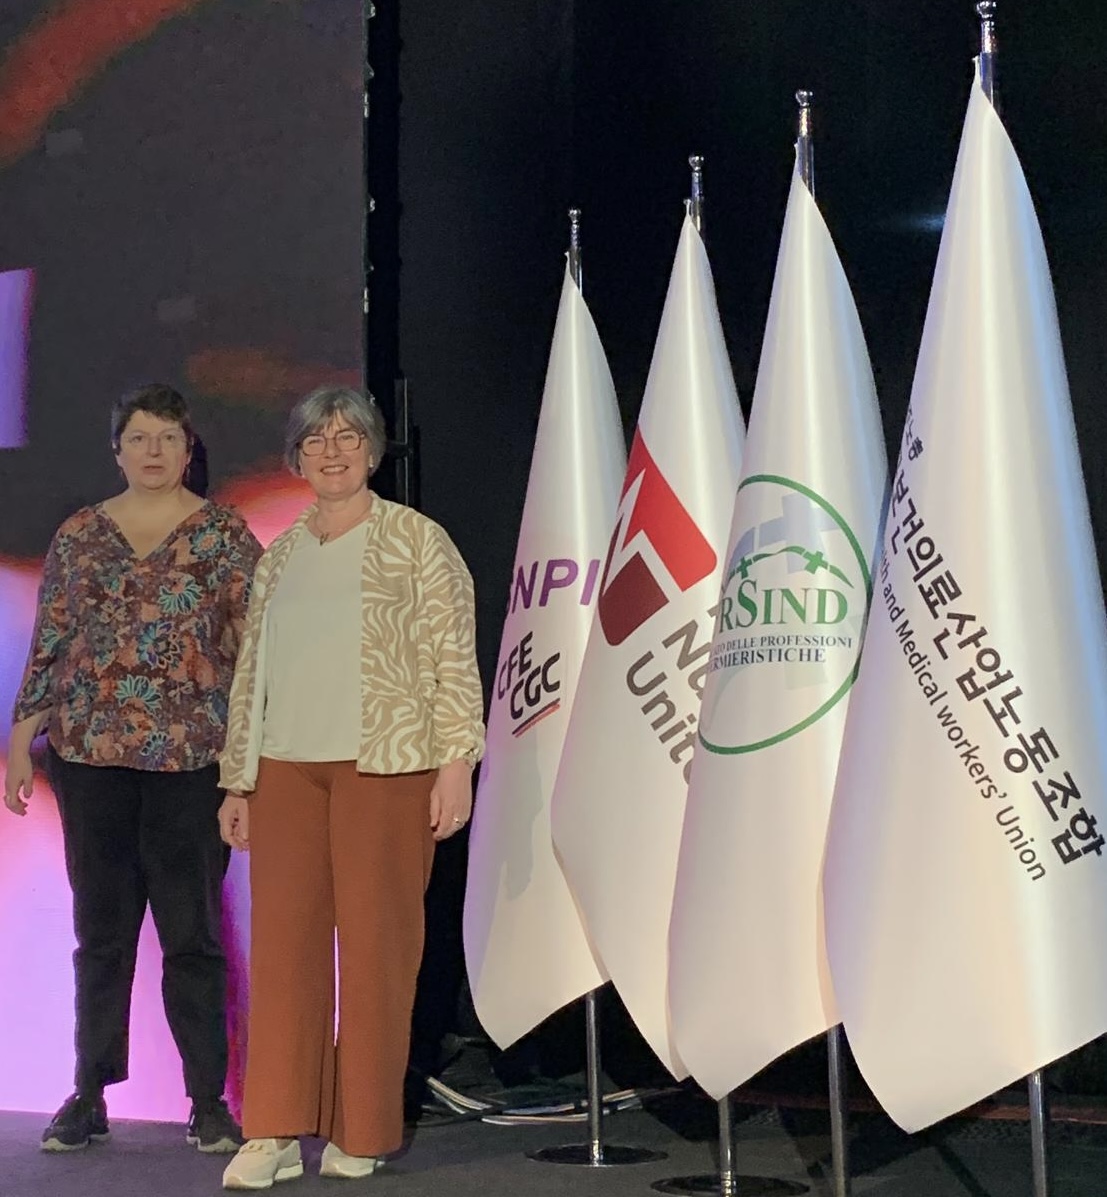 Le SNPI participe au Sommet international des soins #infirmiers organisé en Turquie par le syndicat #infirmier @hepsen_2020 

unité #infirmiere @GlobalNursesU 

des #ratios pour la qualité des soins aux #patients

« Une infirmière forte, une société forte, un avenir fort ! »